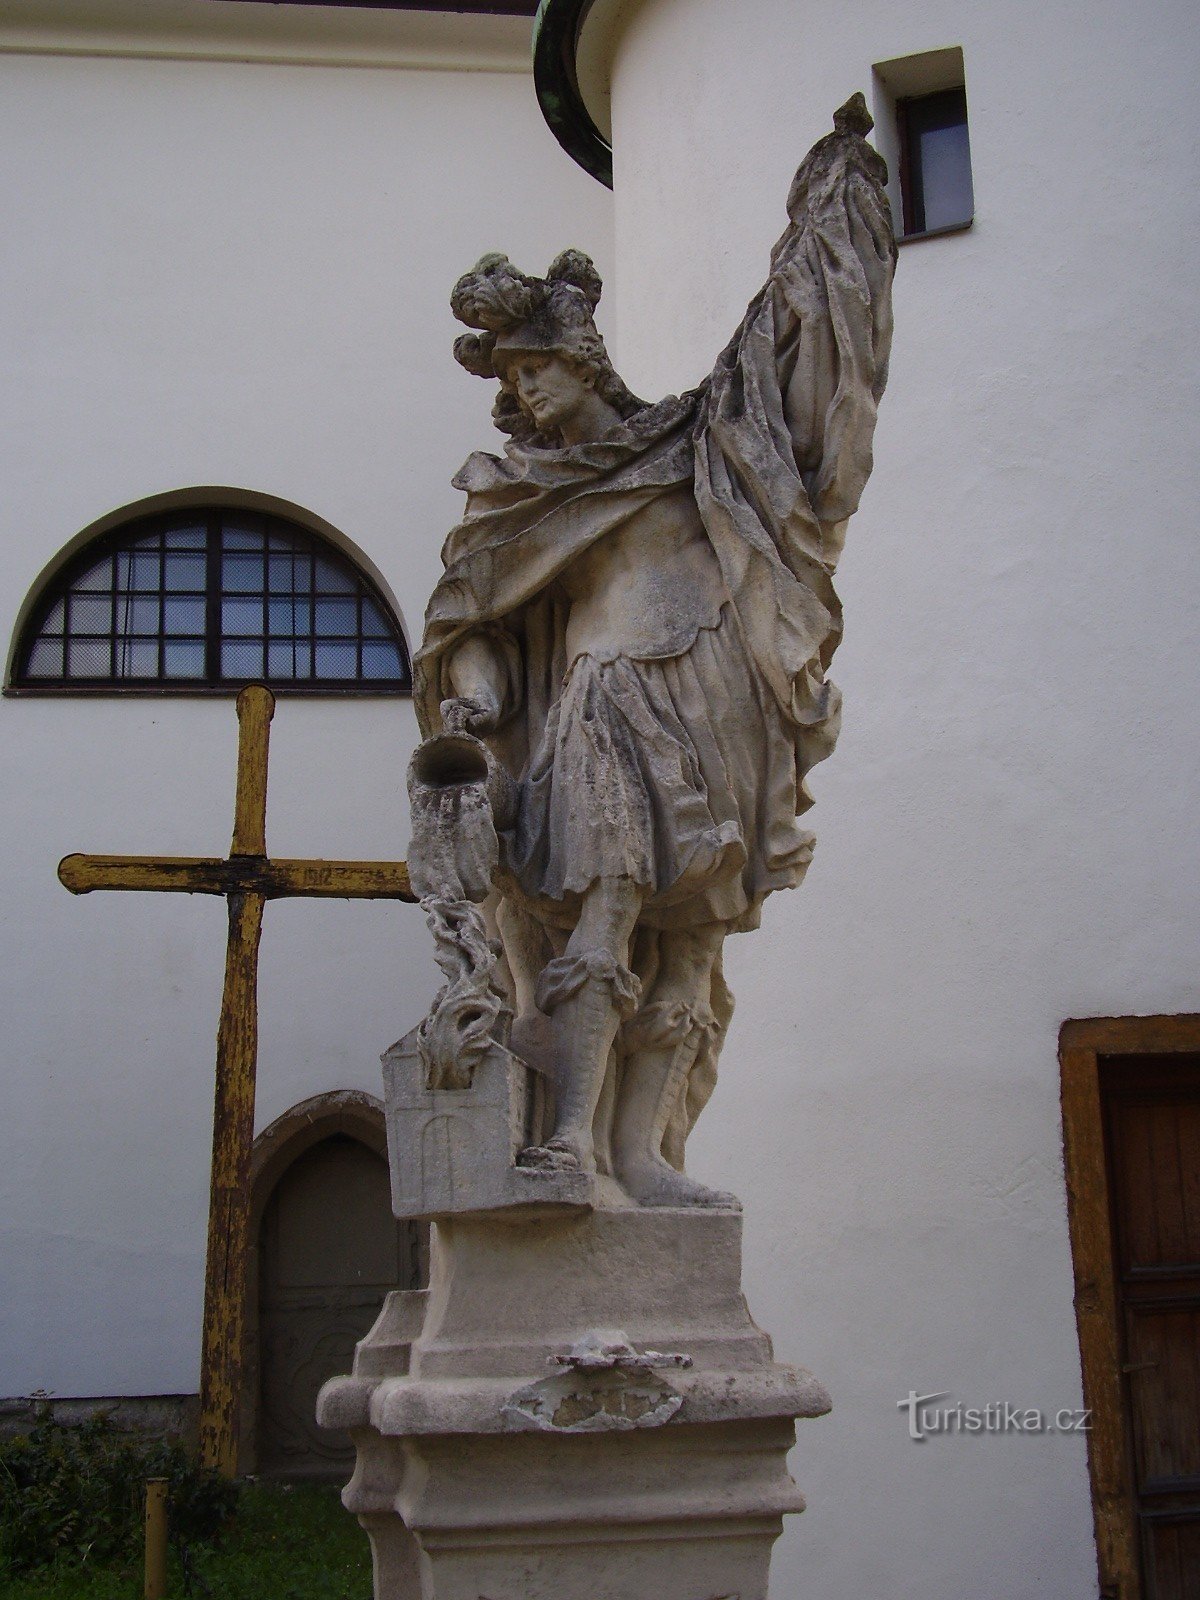 Statue af St. Florian i Rosice nær Brno